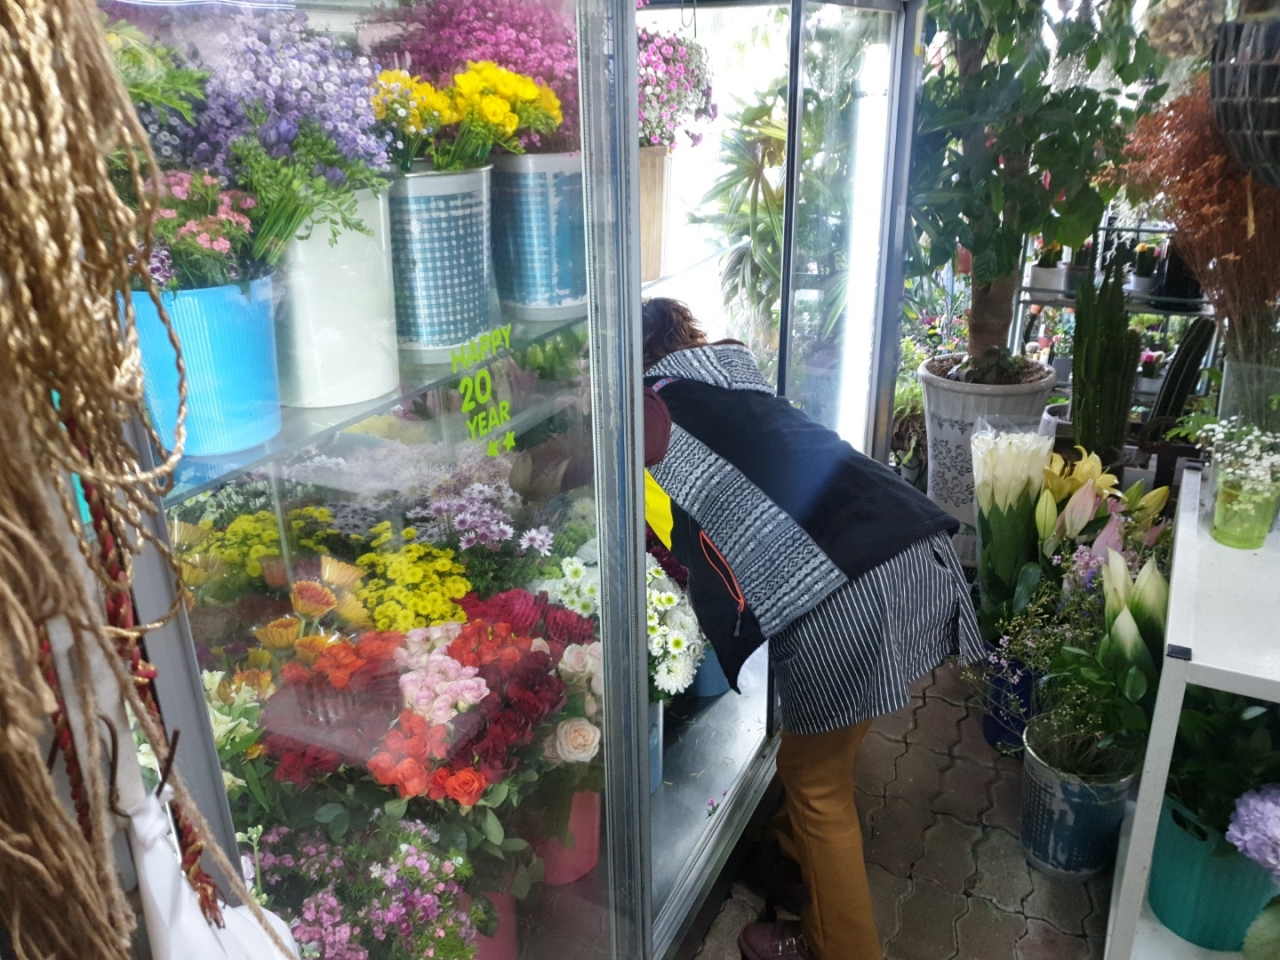 13일 제주시 아라동 꽃집에서 직원이 꽃 냉장고 안에 들어 있는 꽃들을 관리하고 있다.